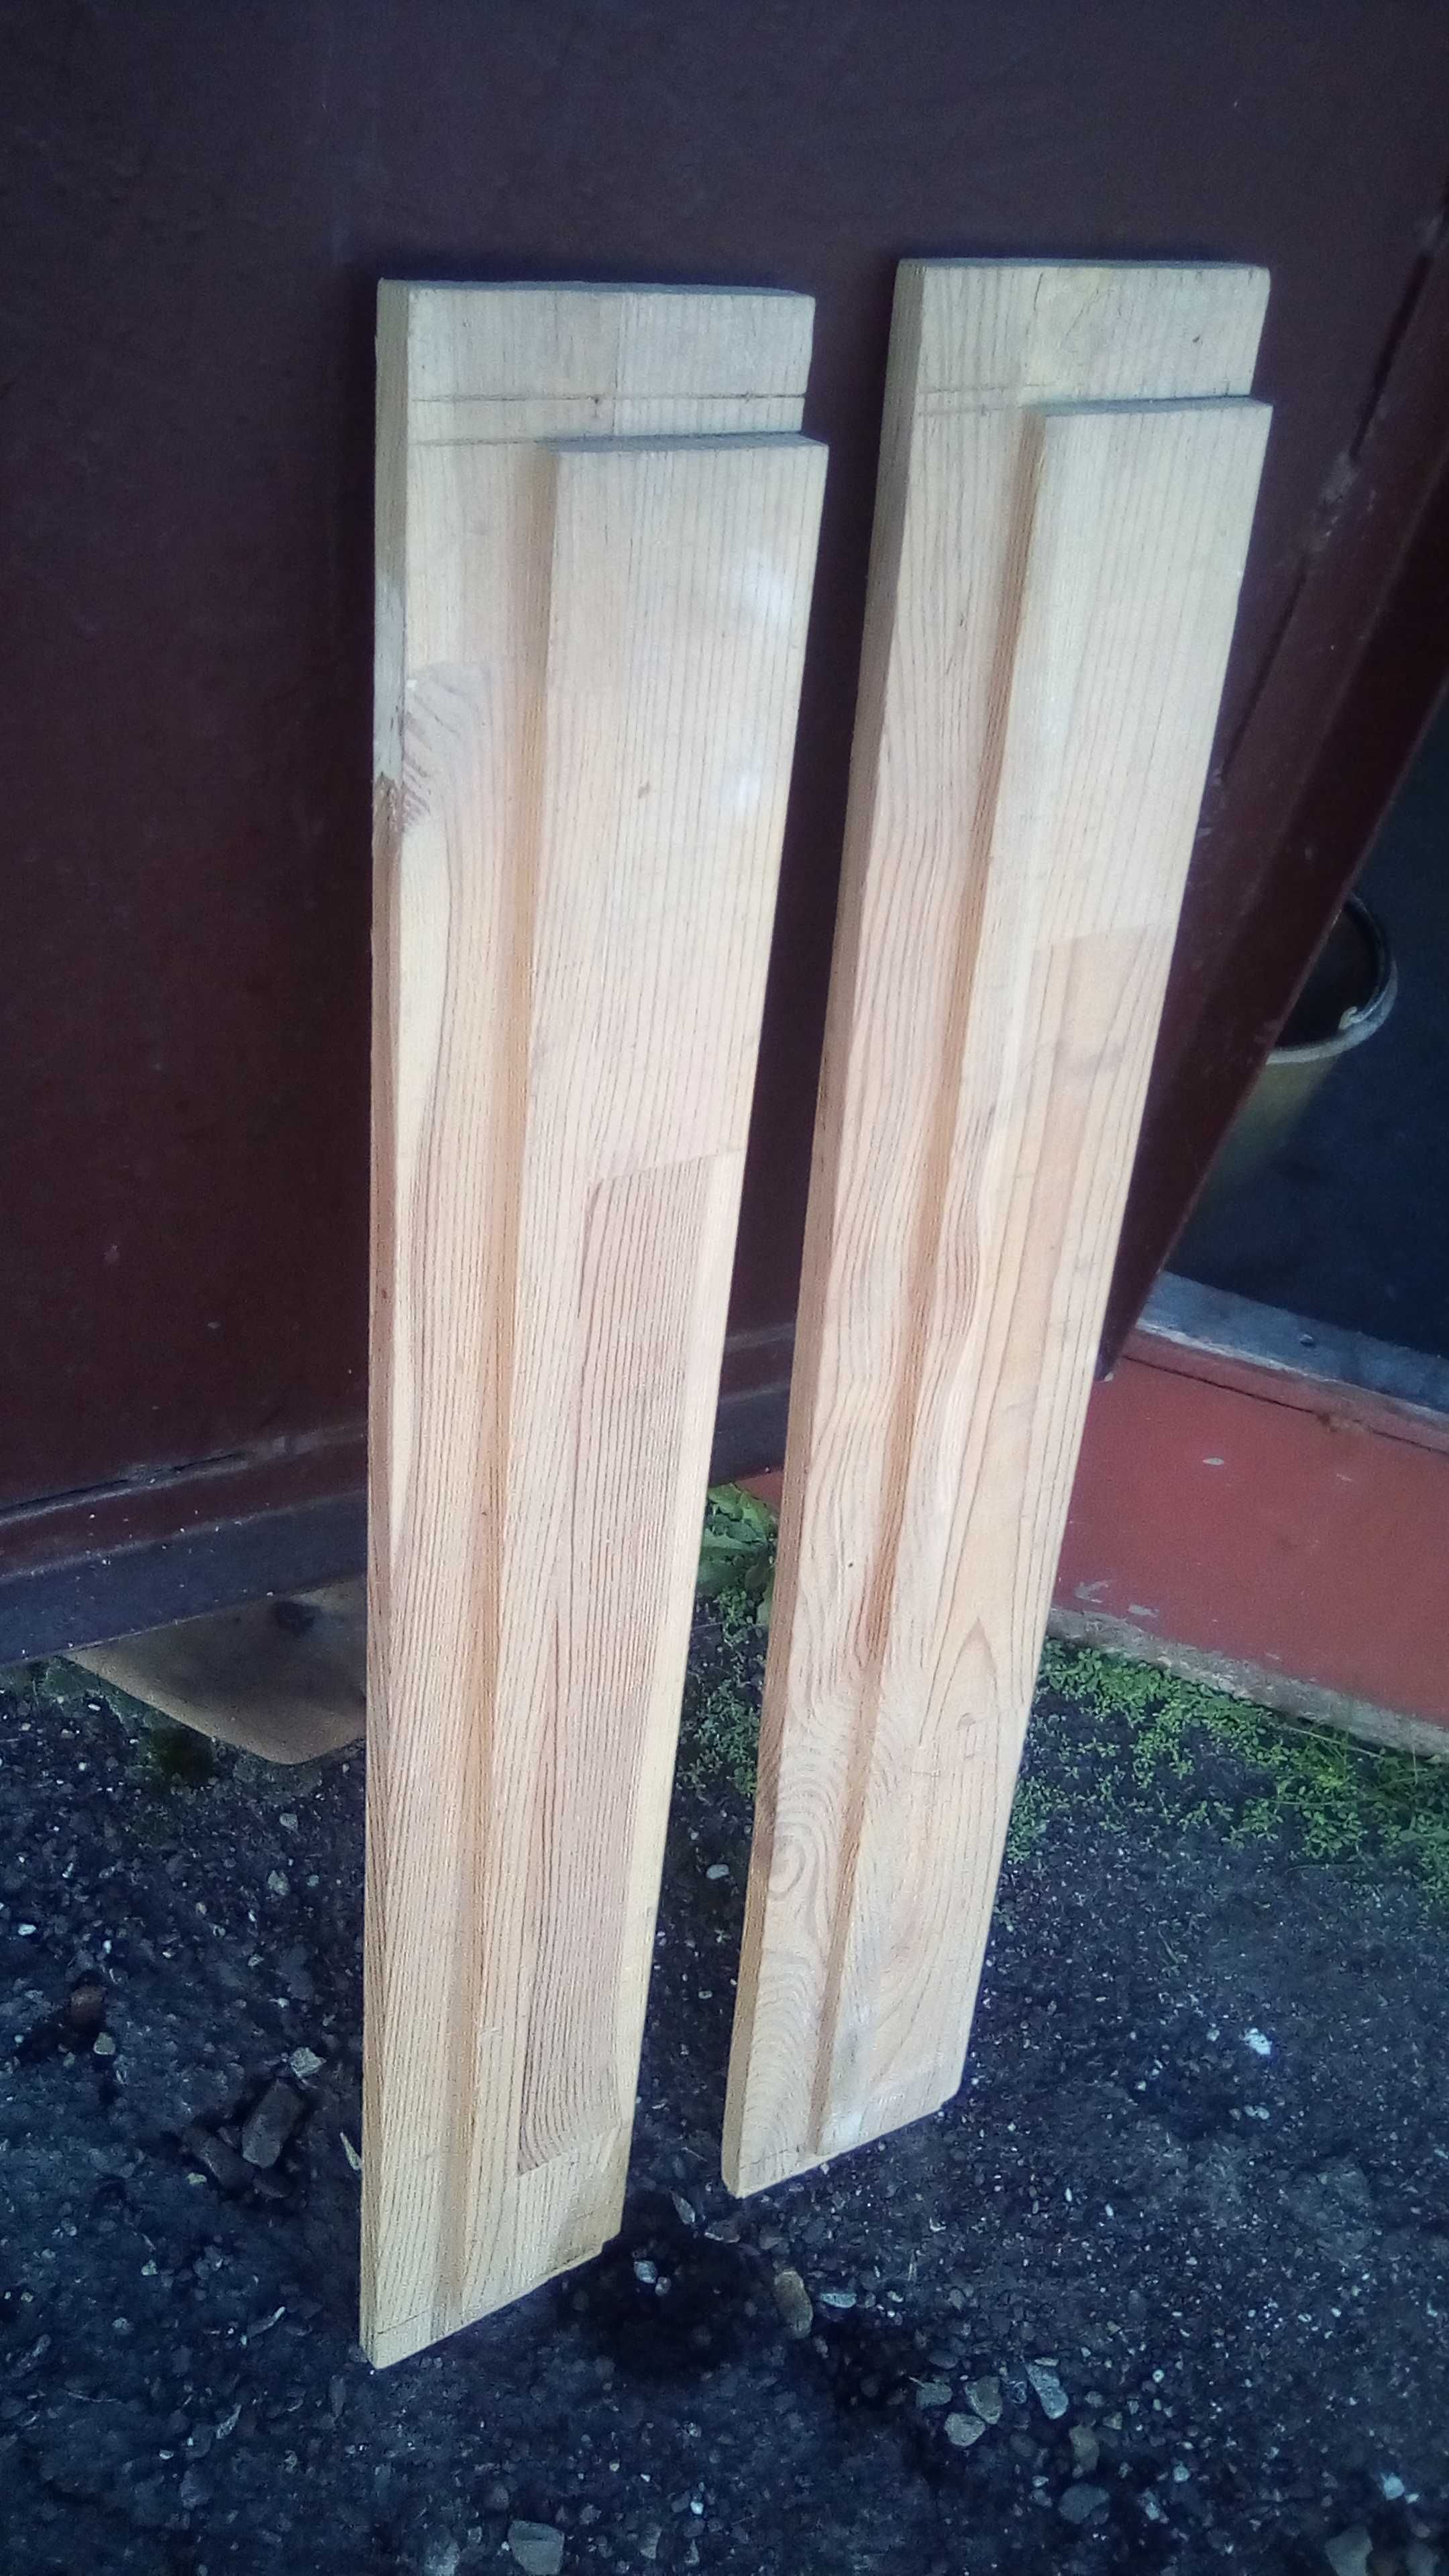 Новая деревянная верхняя и нижняя часть фрамуги двери.